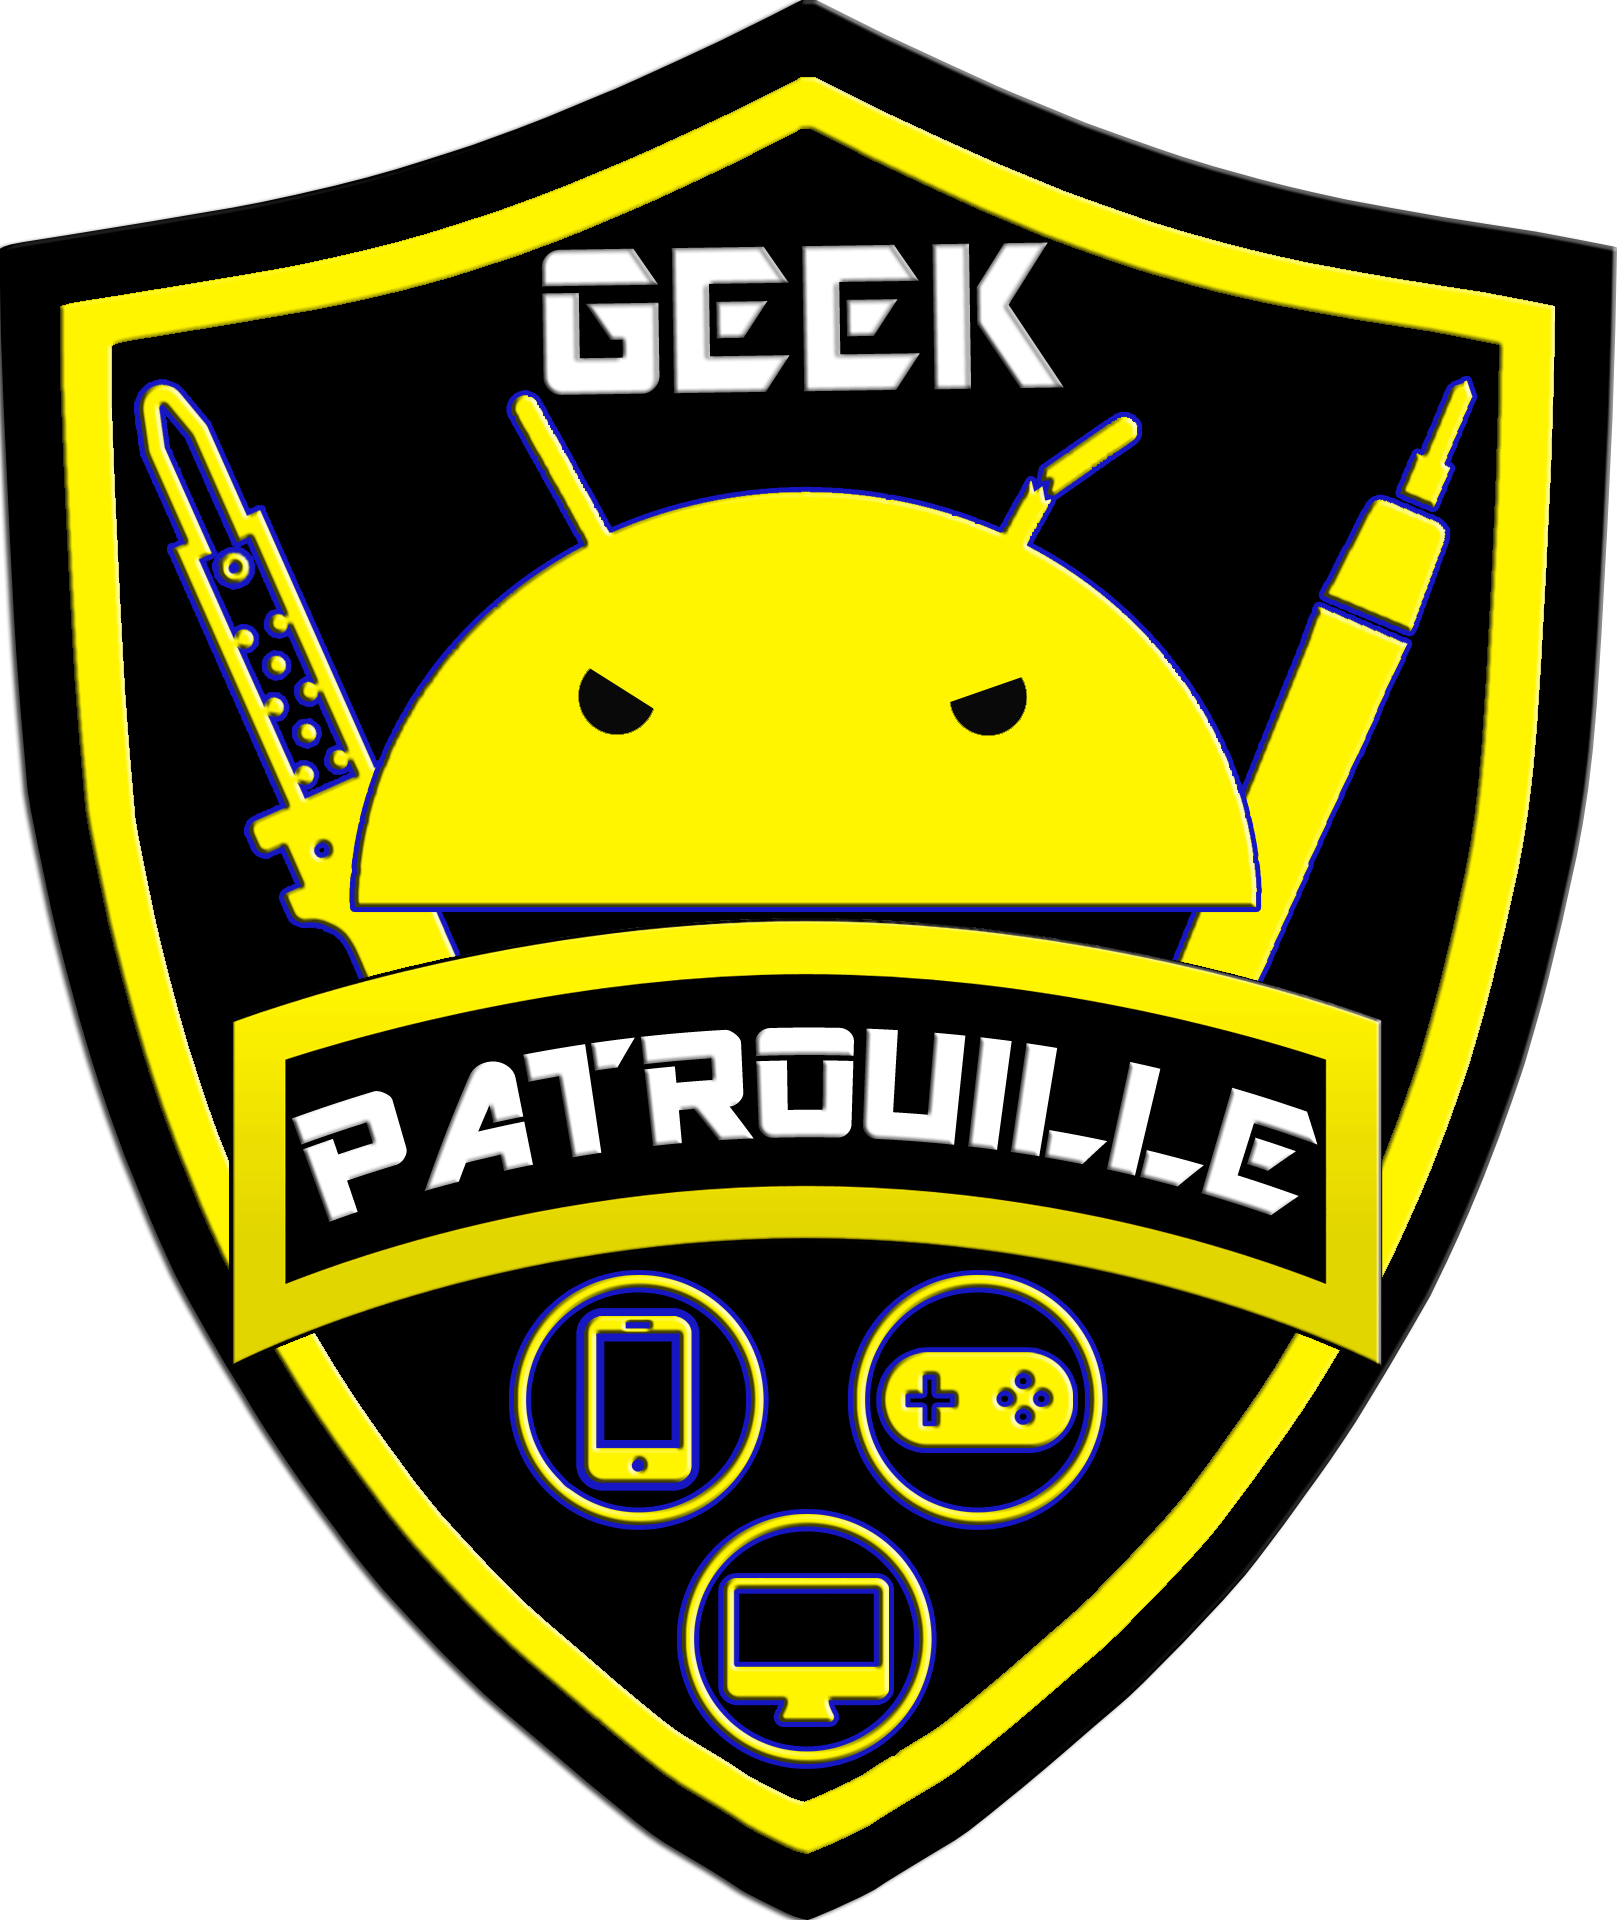 Geek Patrouille